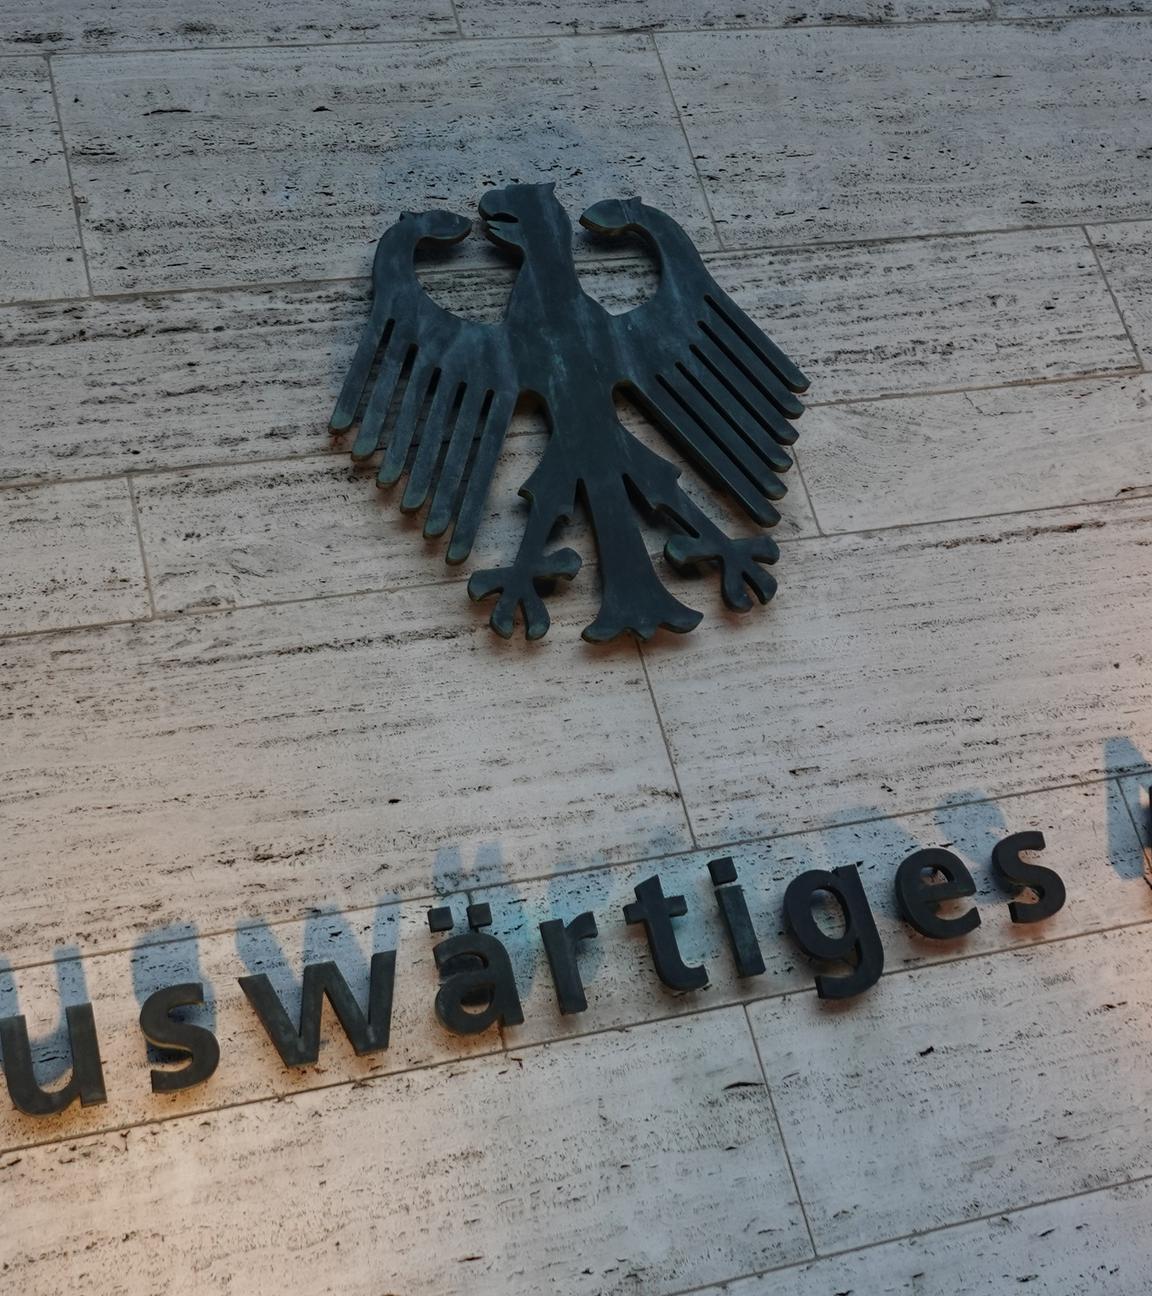 Berlin: Das deutsche Wappen und der Schriftzug "Auswärtiges Amt" sind an einer Außenwand am Eingang zum Auswärtigen Amt angebracht. 